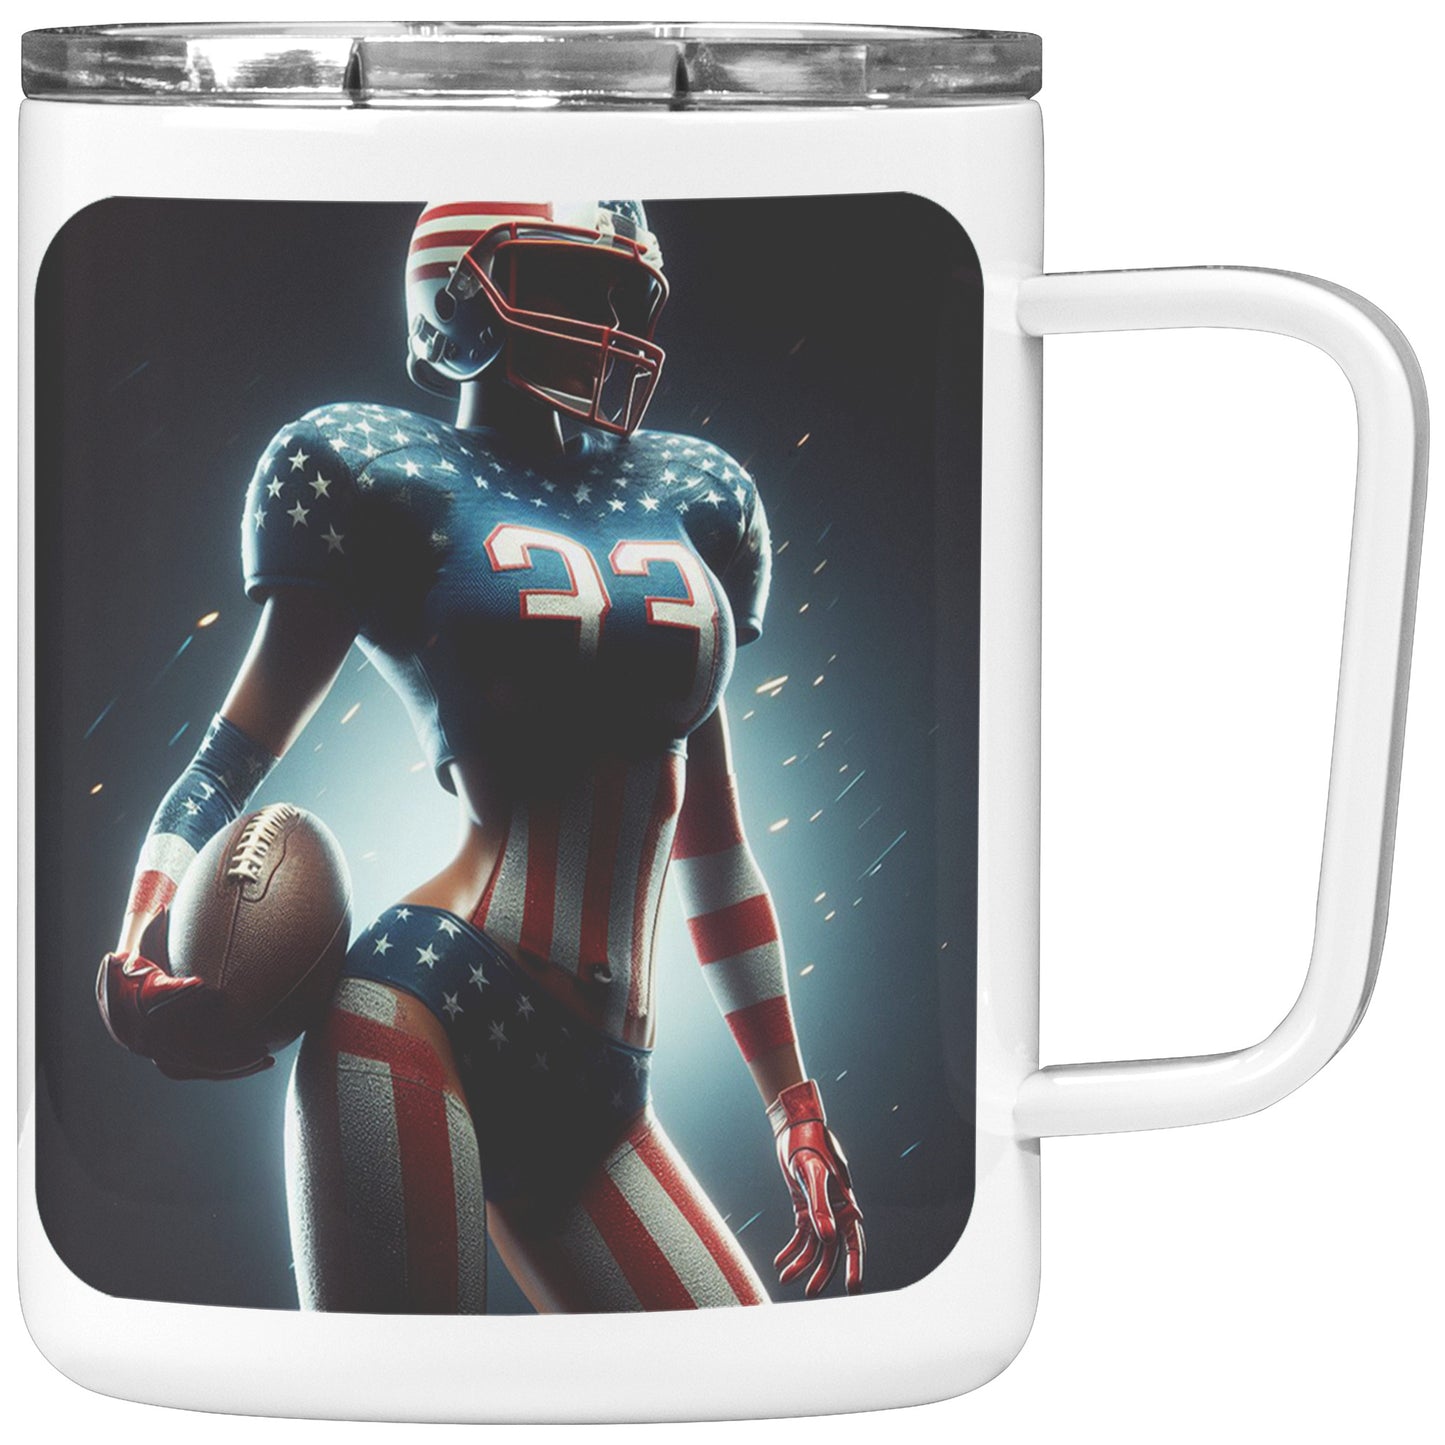 Woman Football Player - Insulated Coffee Mug #32